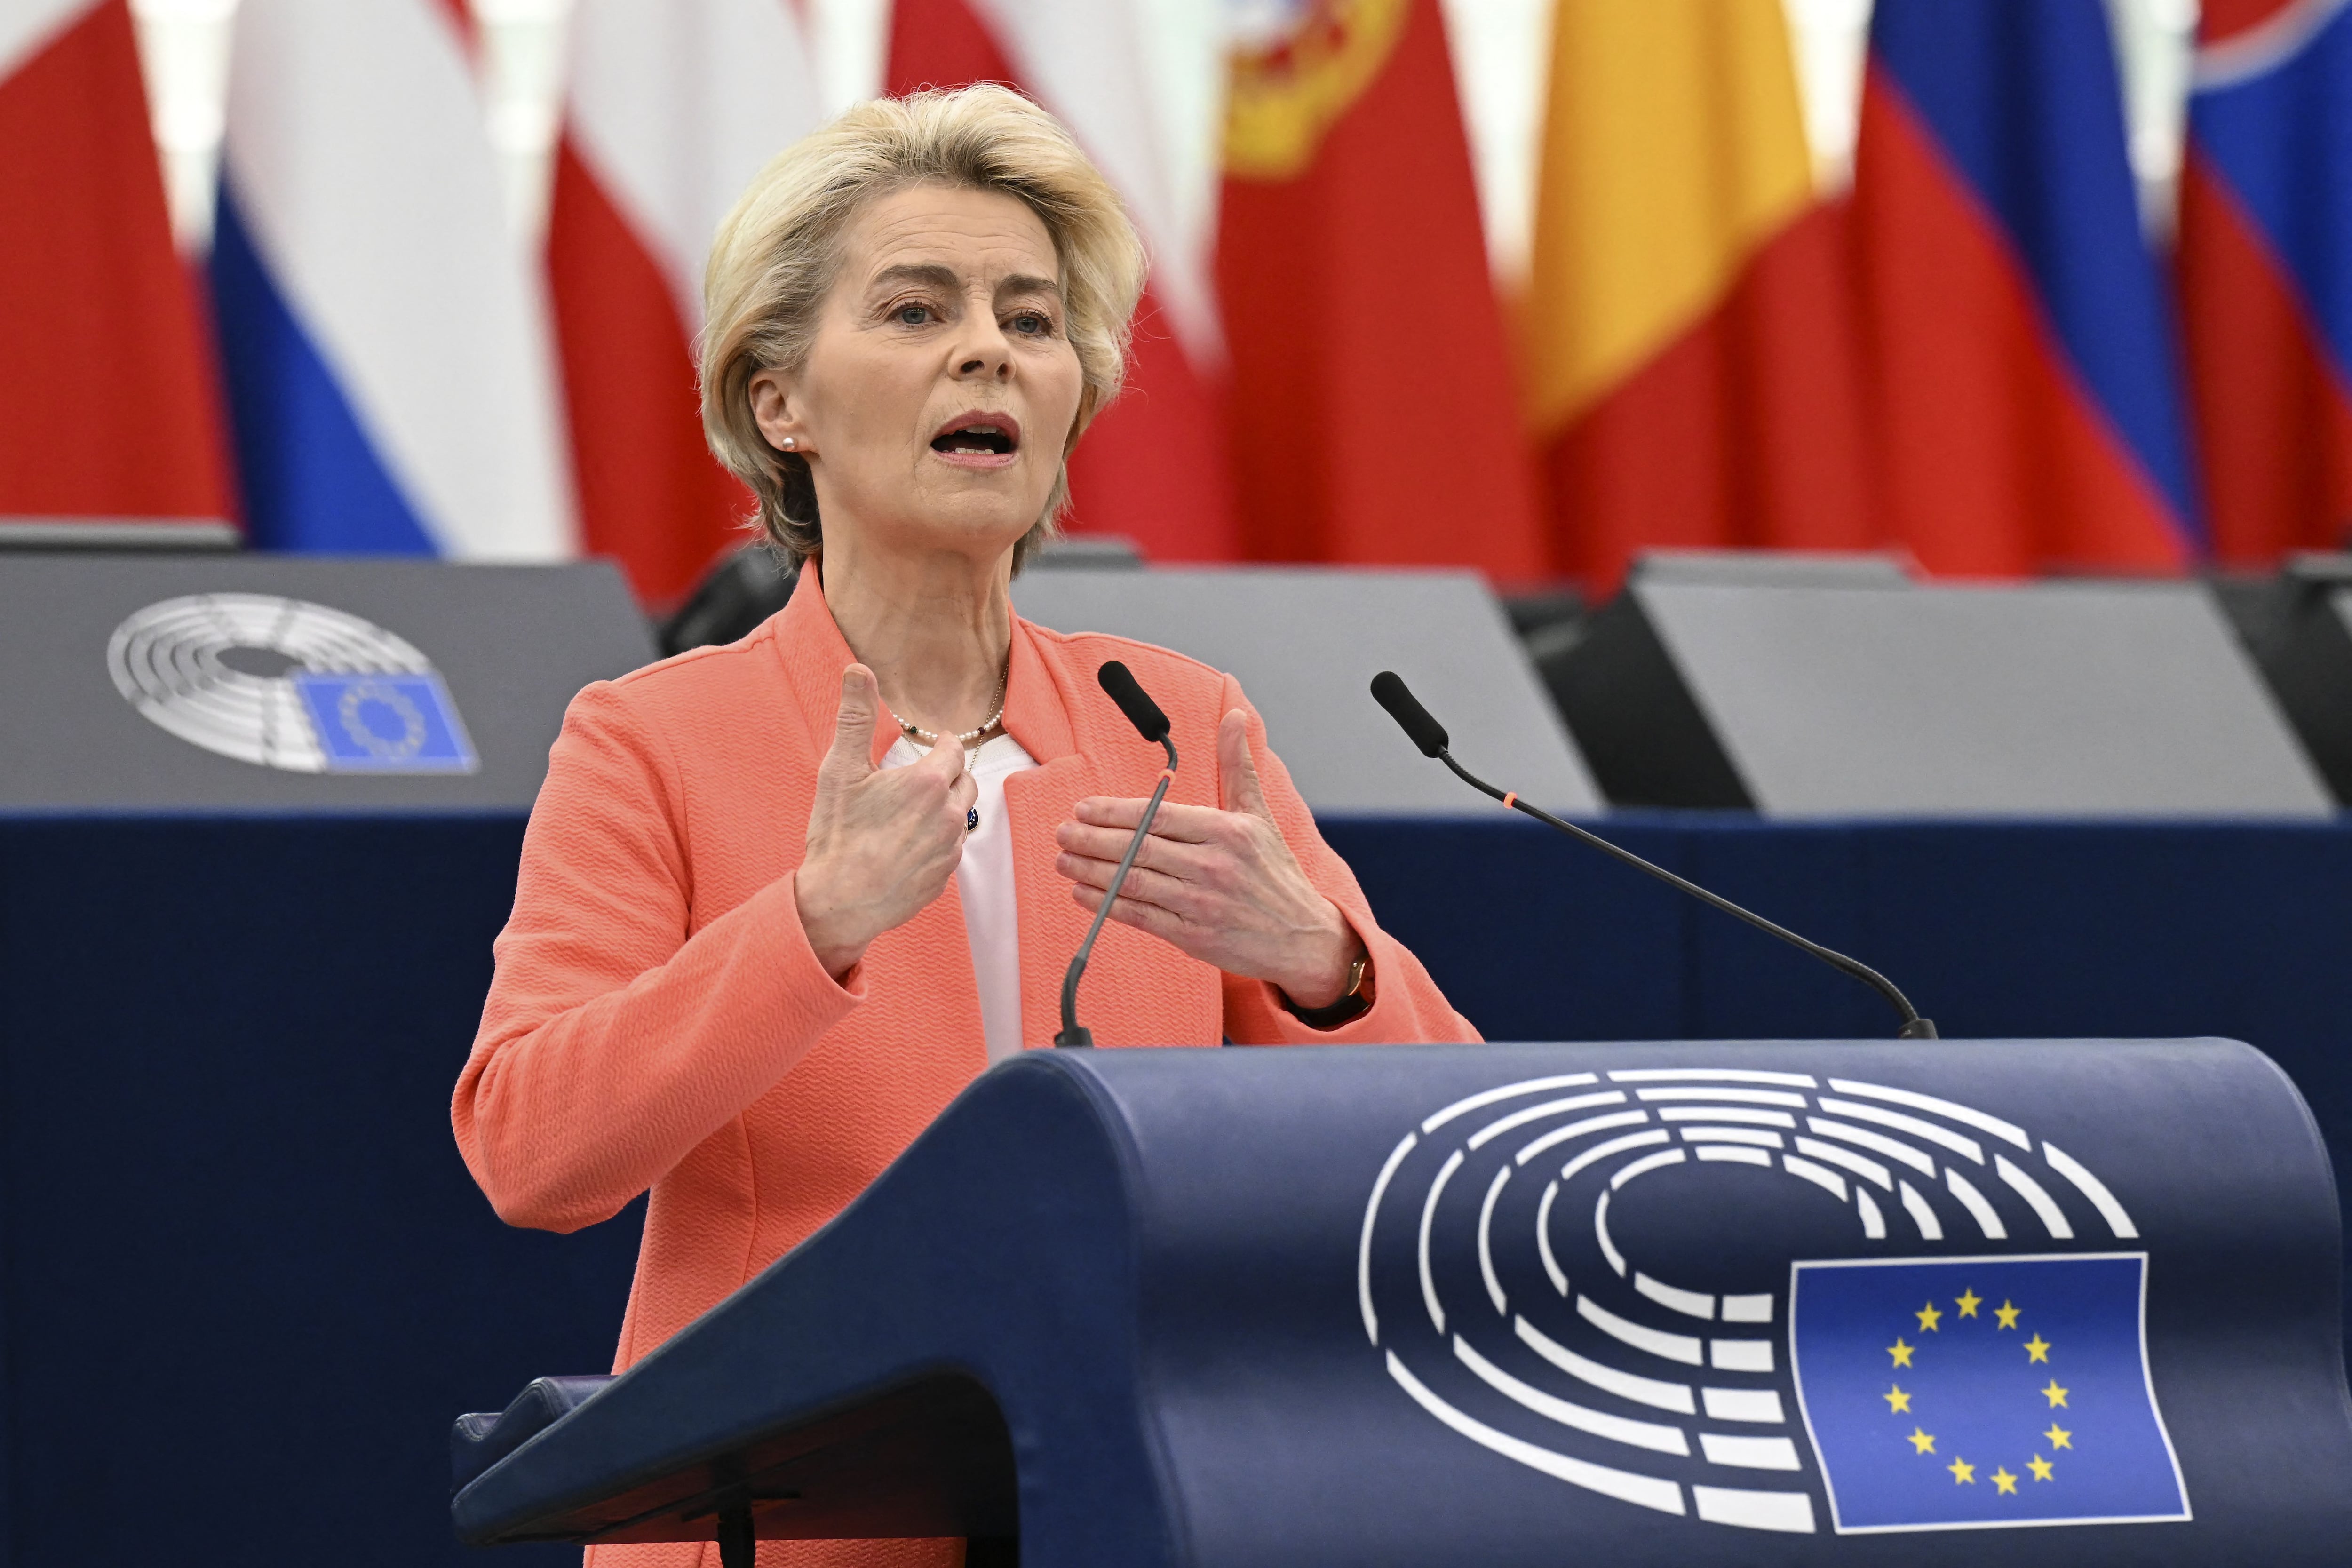 Ursula von der Leyen, presidenta de la Comisión Europea, asegura el apoyo de una coalición parlamentaria amplia tras su reelección. (Foto: Frederick FLORIN / AFP)